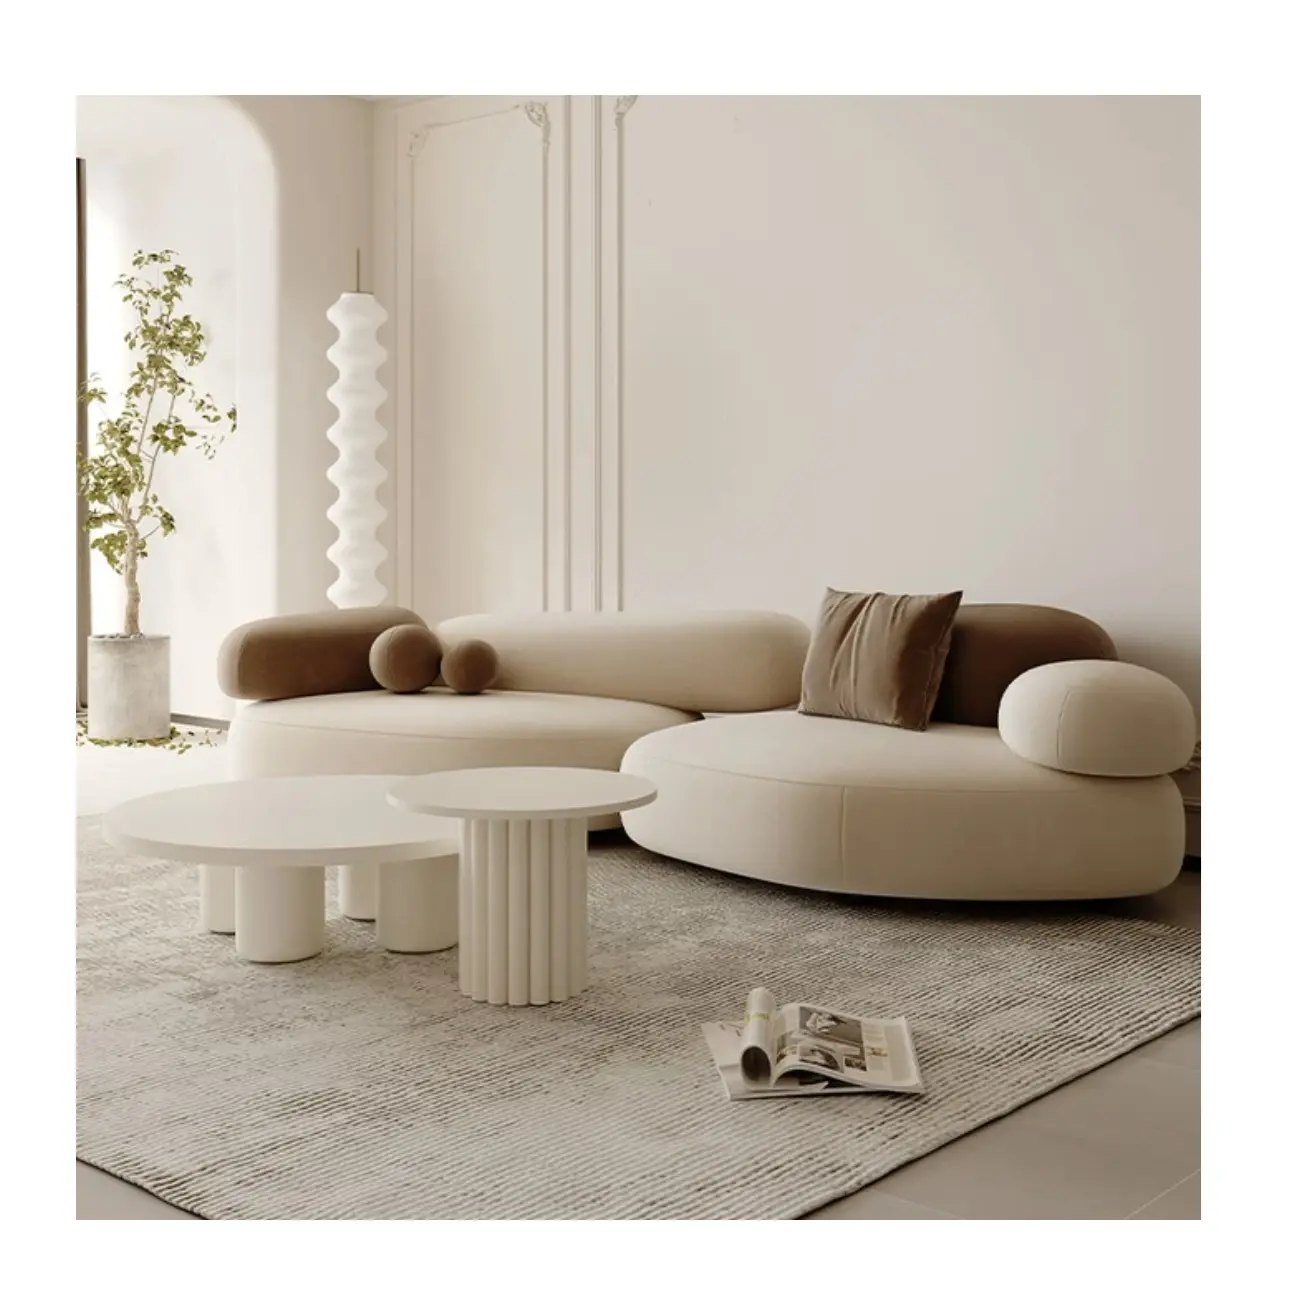 Hochwertiges Samt Wohnzimmer Couch Sofa Lamm Fleece Sofa Luxus Leders ofa